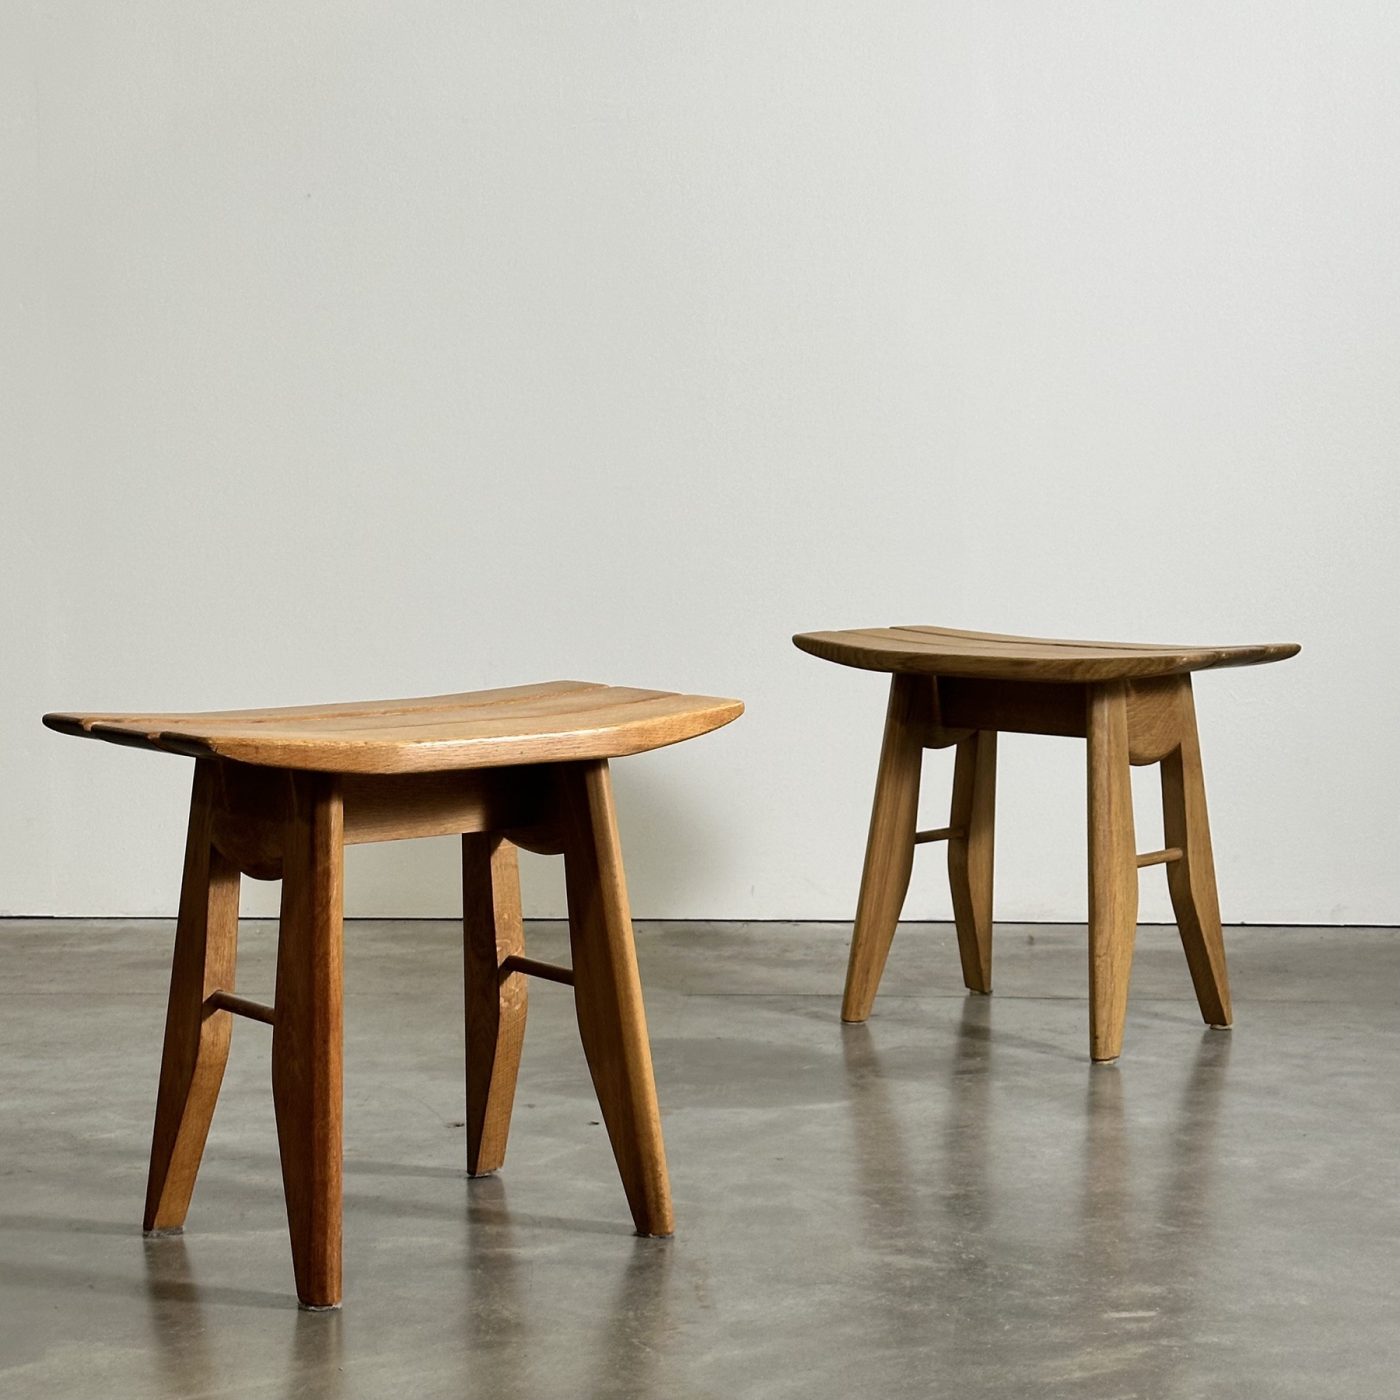 objet-vagabond-guillerme-stools0006